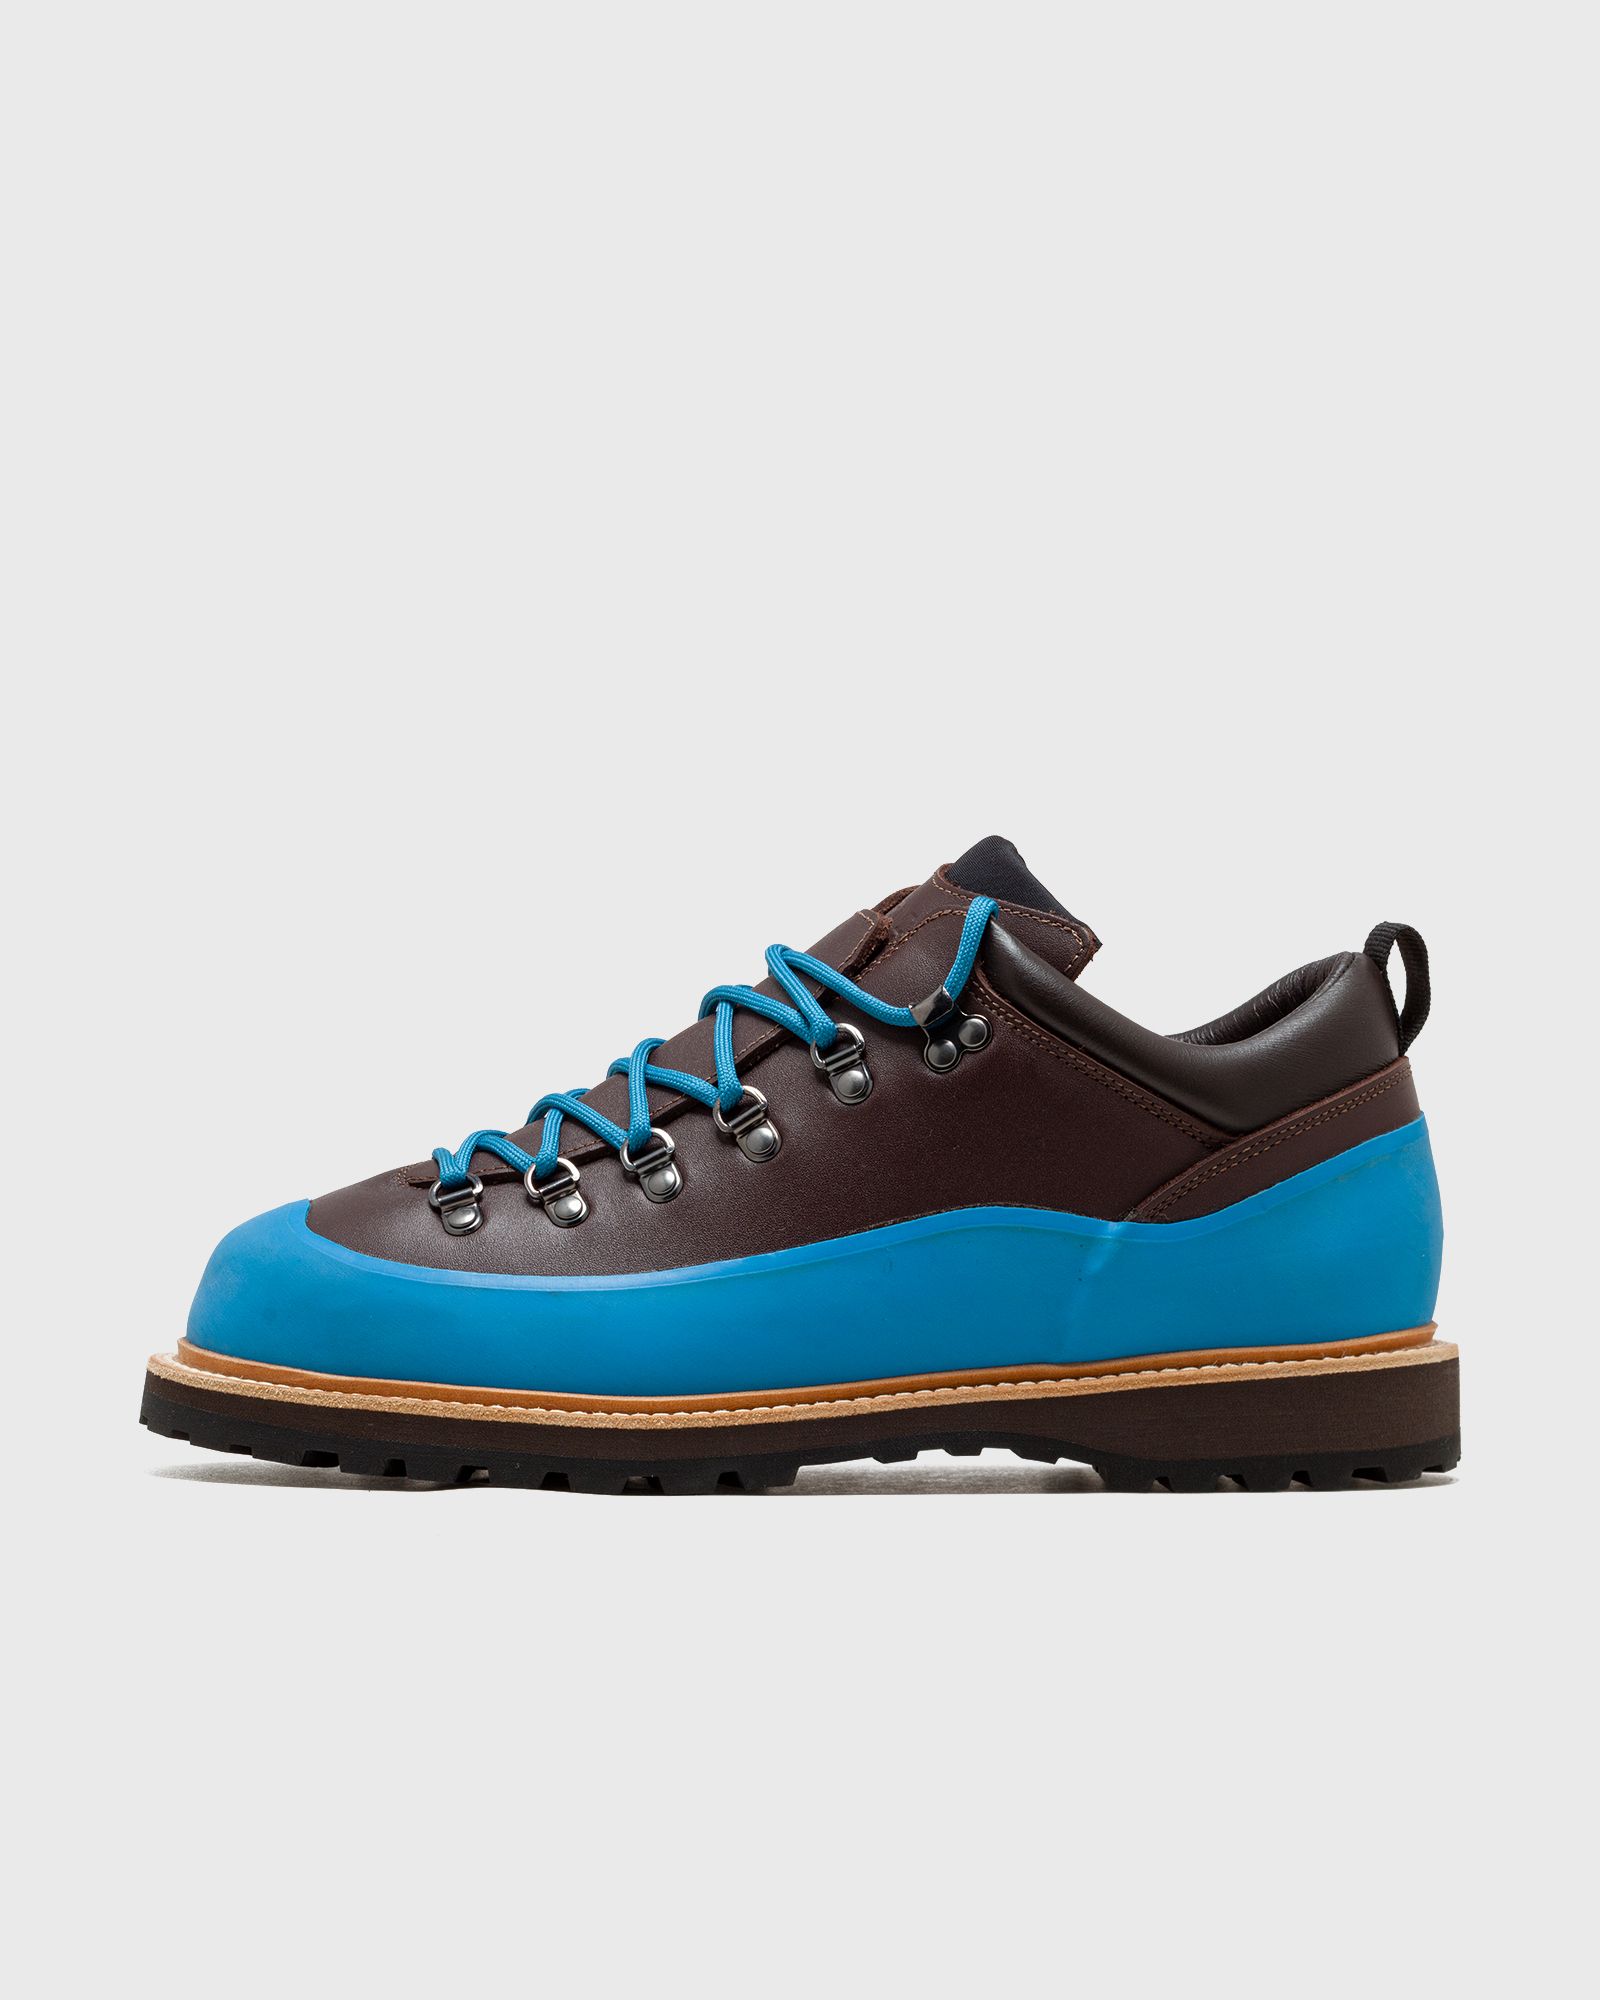 DIEMME - roccia basso men boots blue|brown in größe:42,5